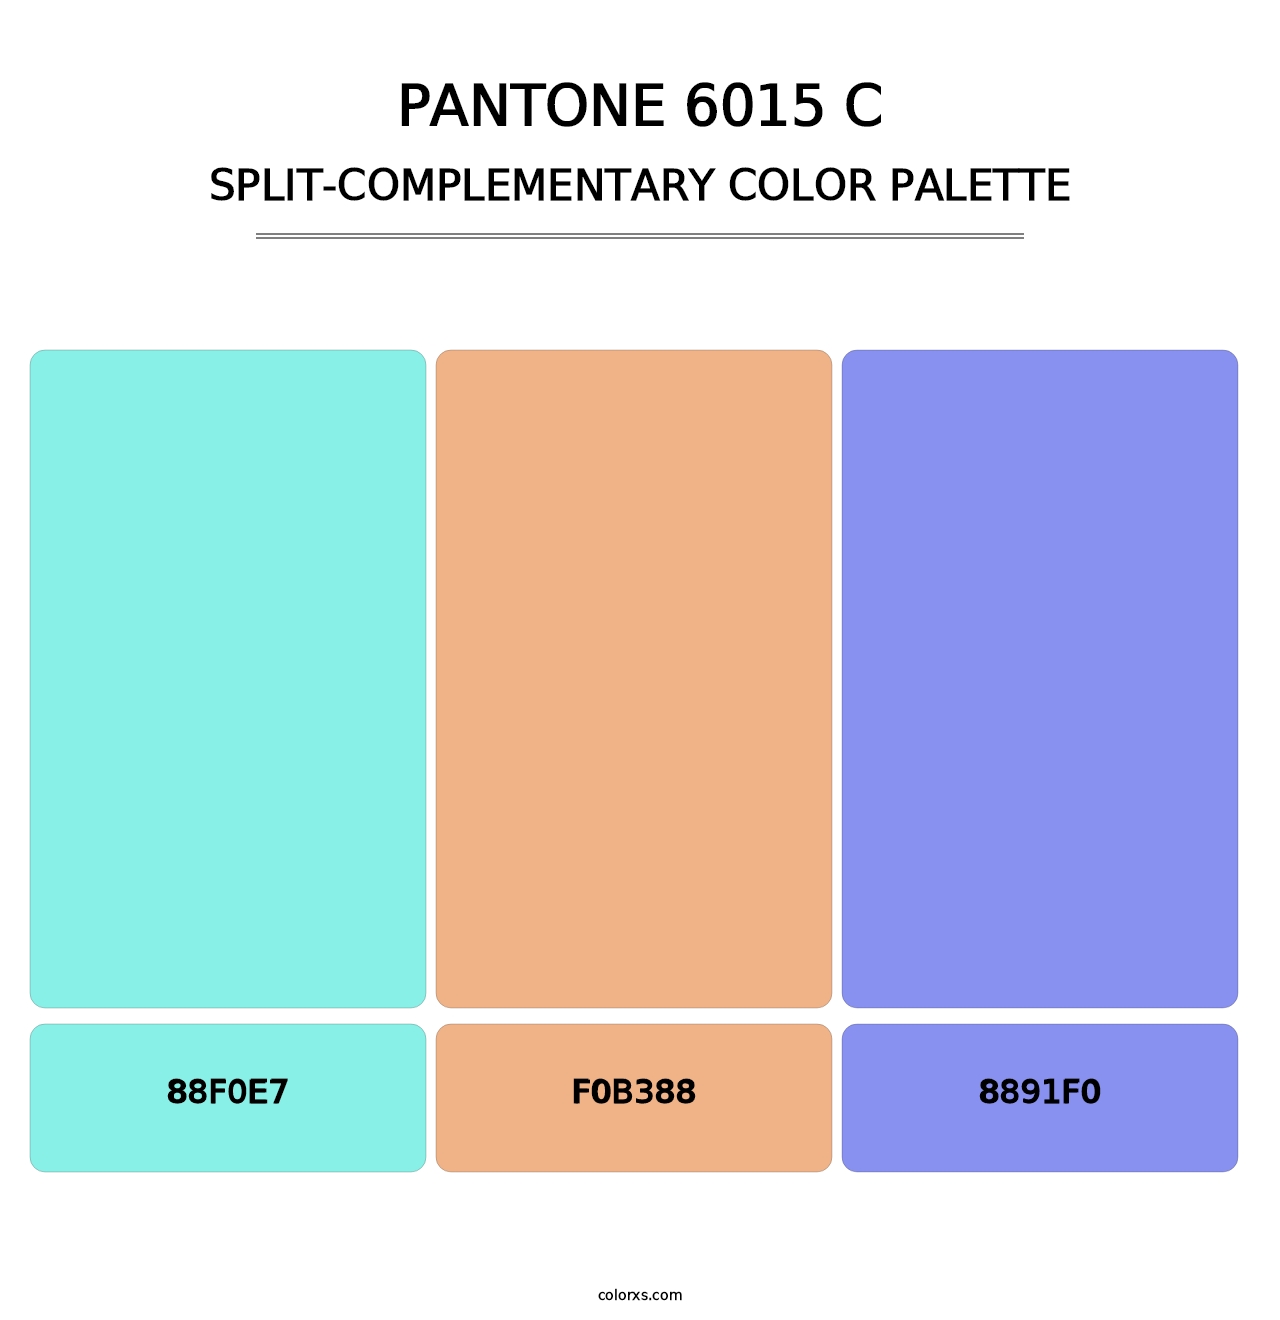 PANTONE 6015 C - Split-Complementary Color Palette